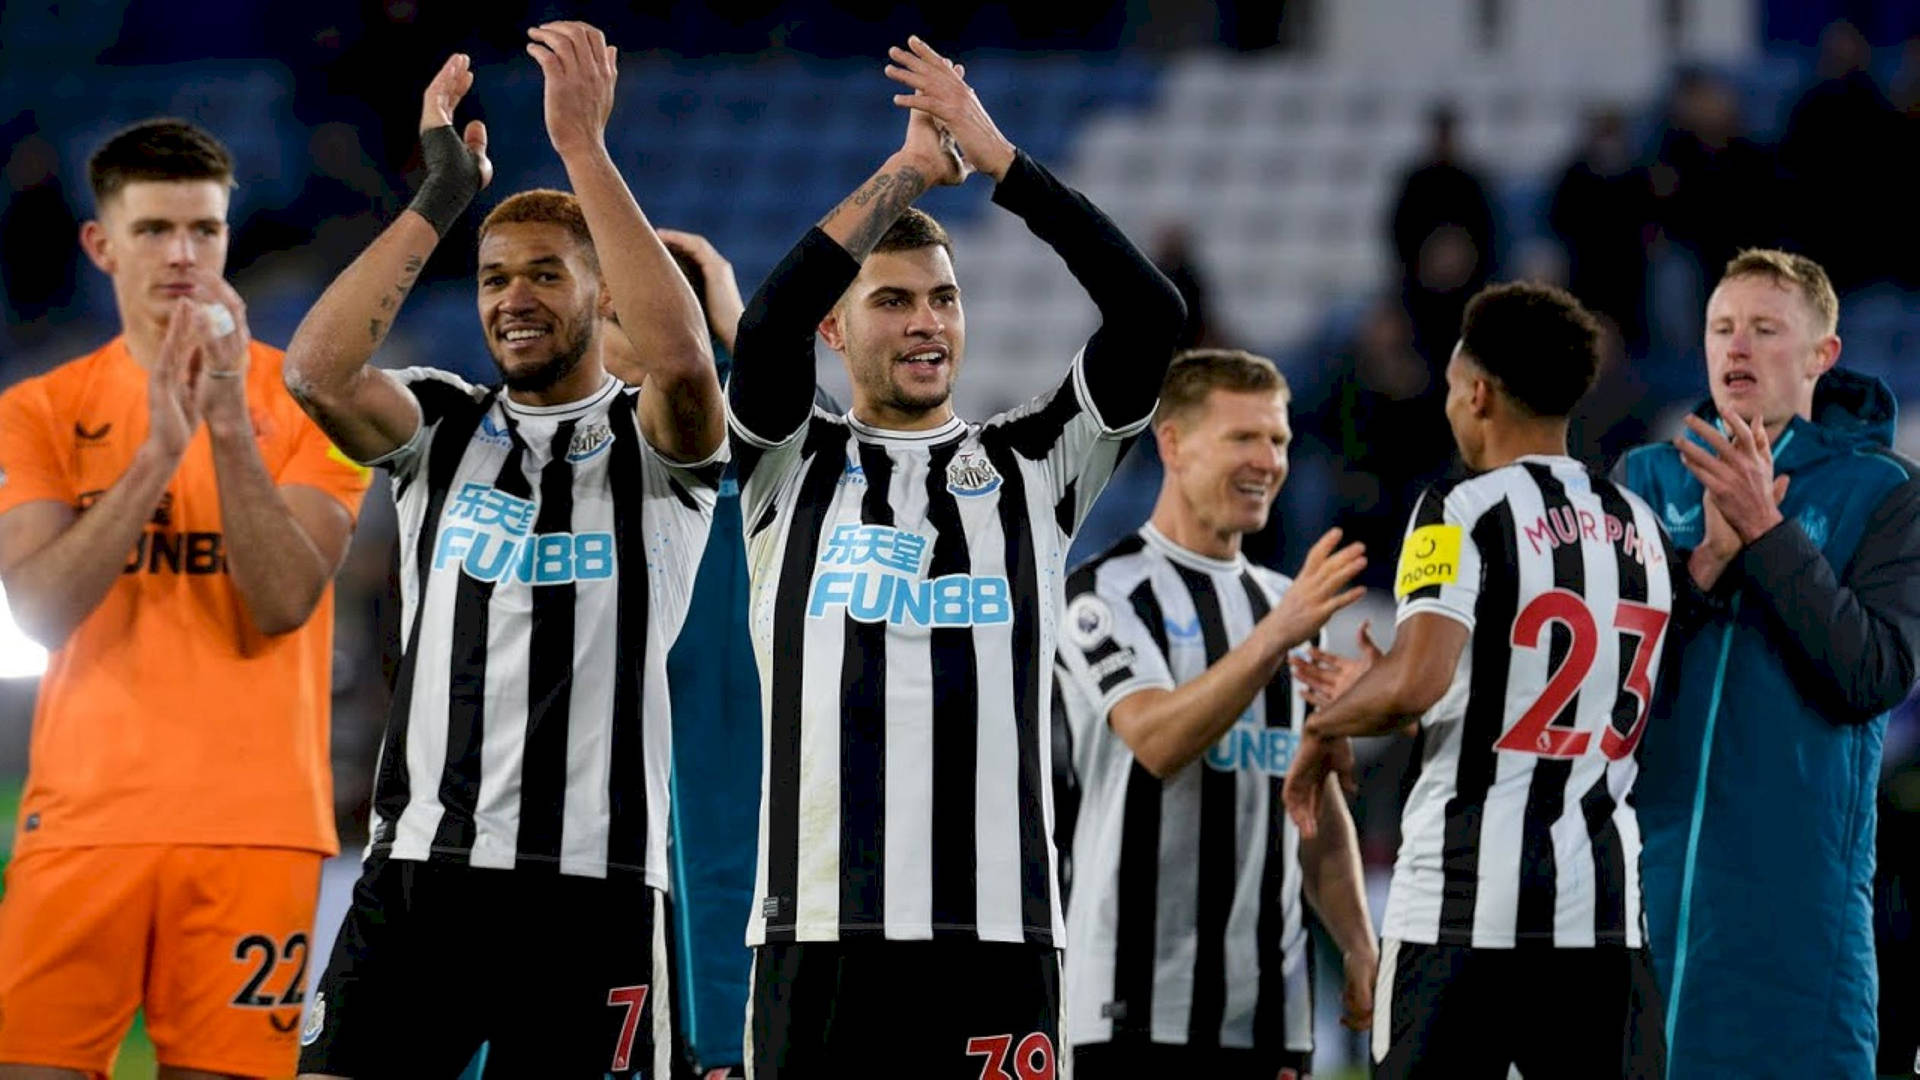 Jugadoresdel Newcastle United Fc Aplaudiendo Fondo de pantalla